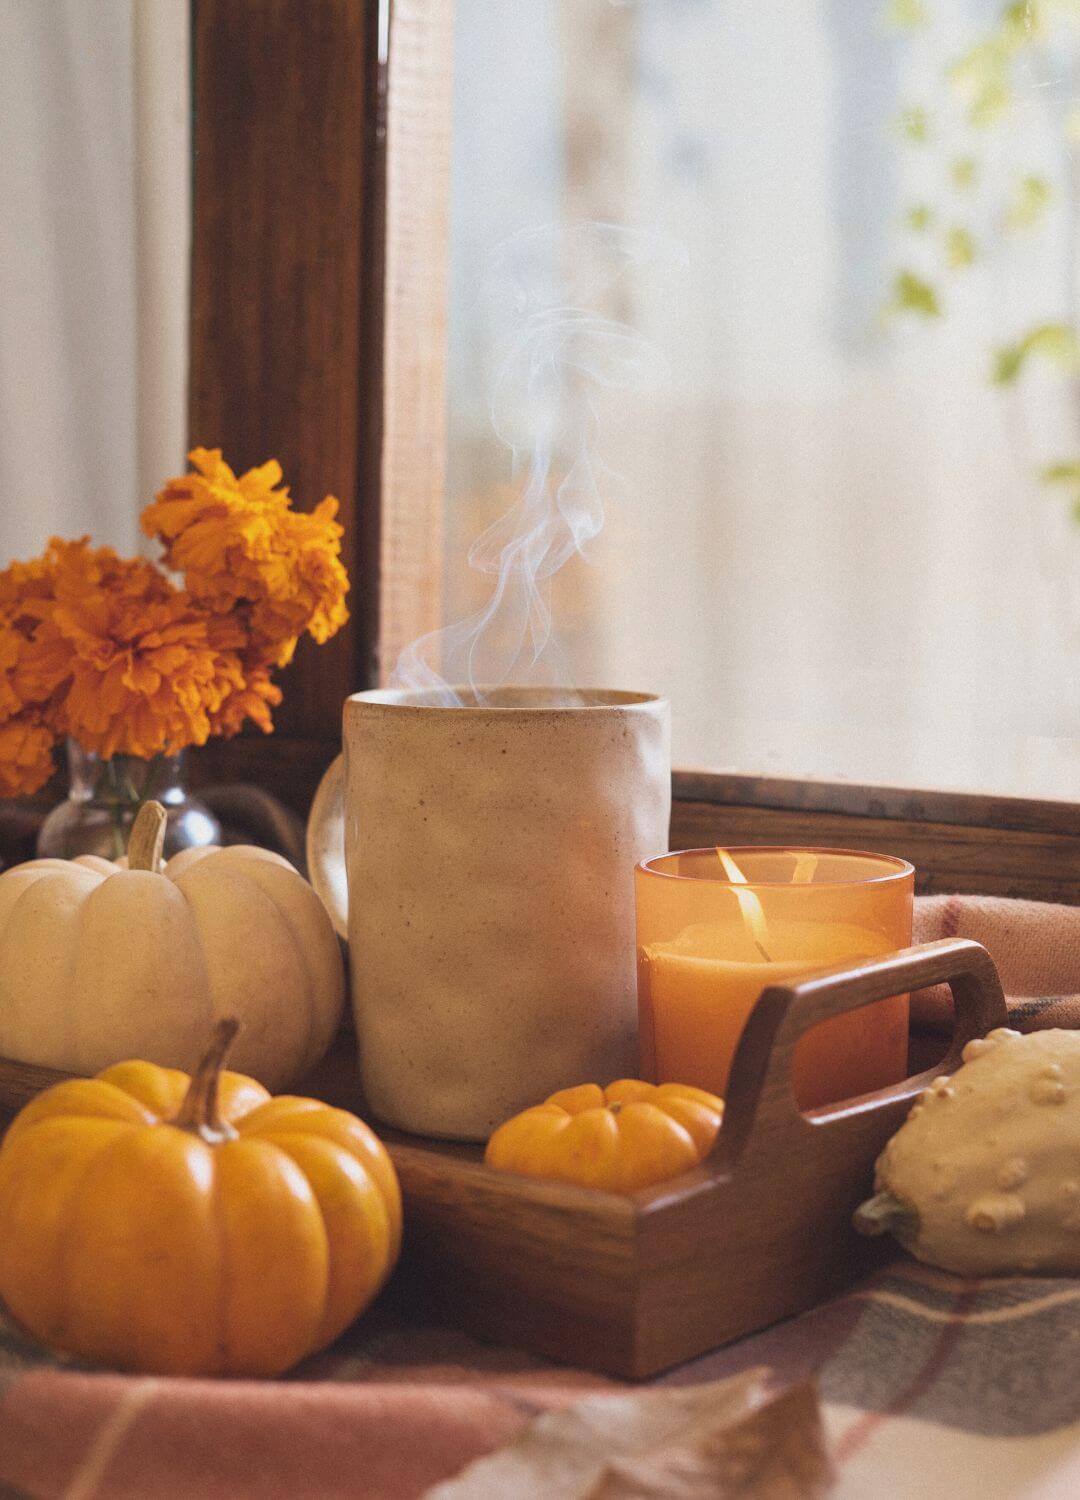 Herbstguide: 5 nährende Rituale für den Herbst